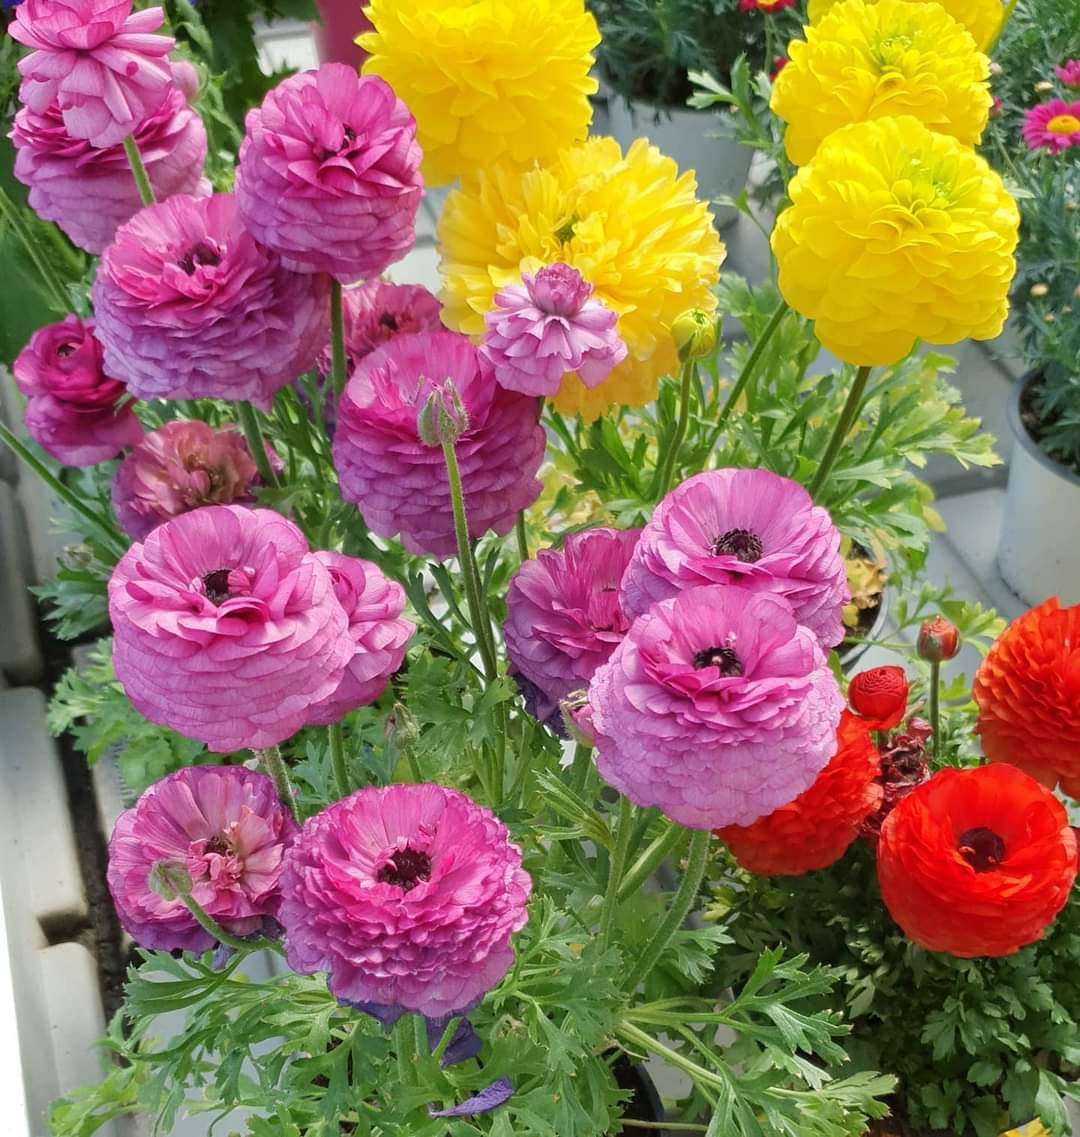 Kleurrijke bloemen online puzzel